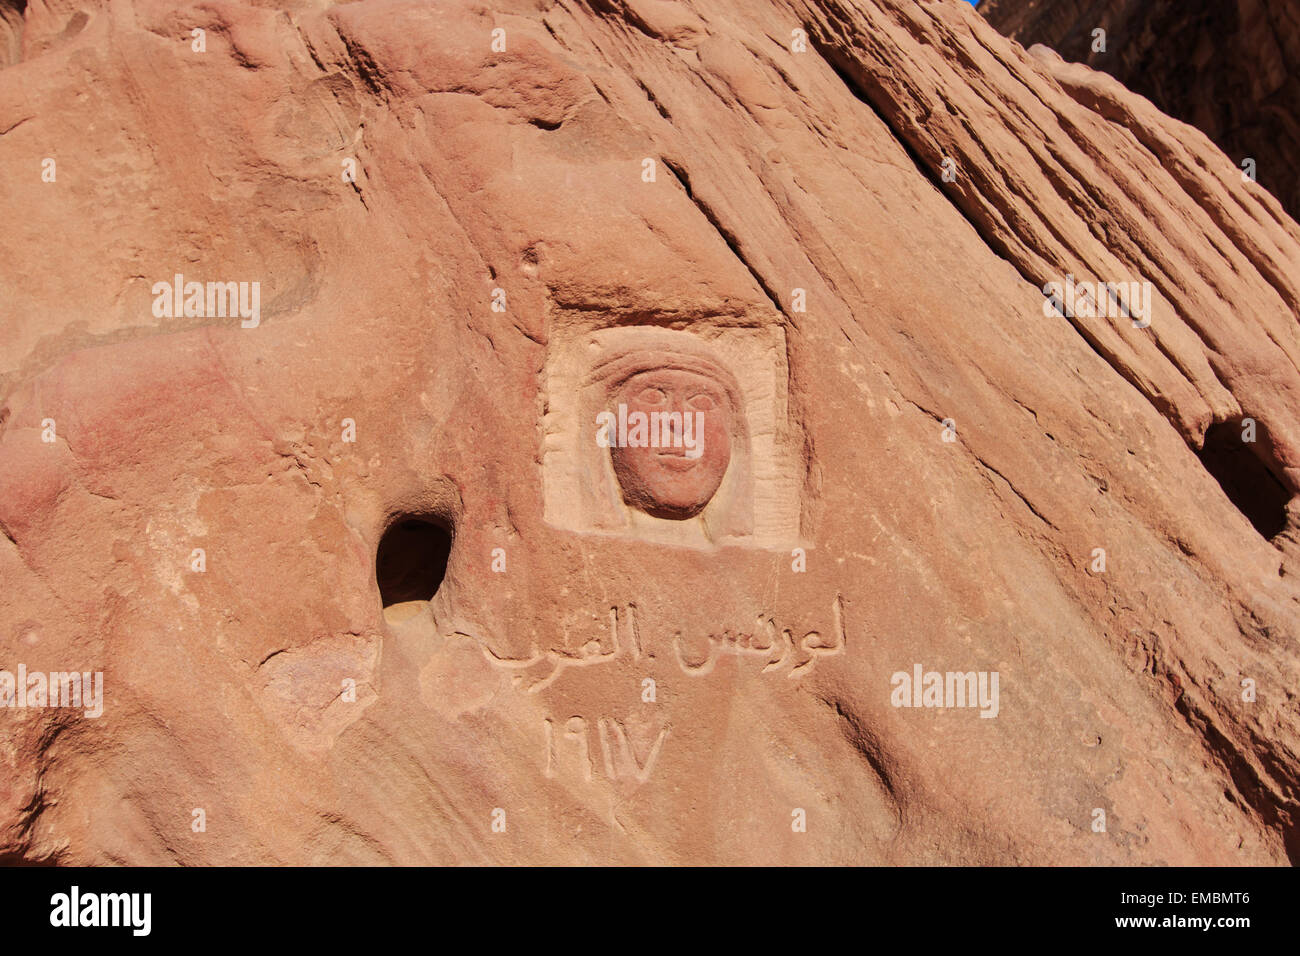 Carving of Lawrence of Arabia in the Wadi Rum desert, Jordan Stock Photo